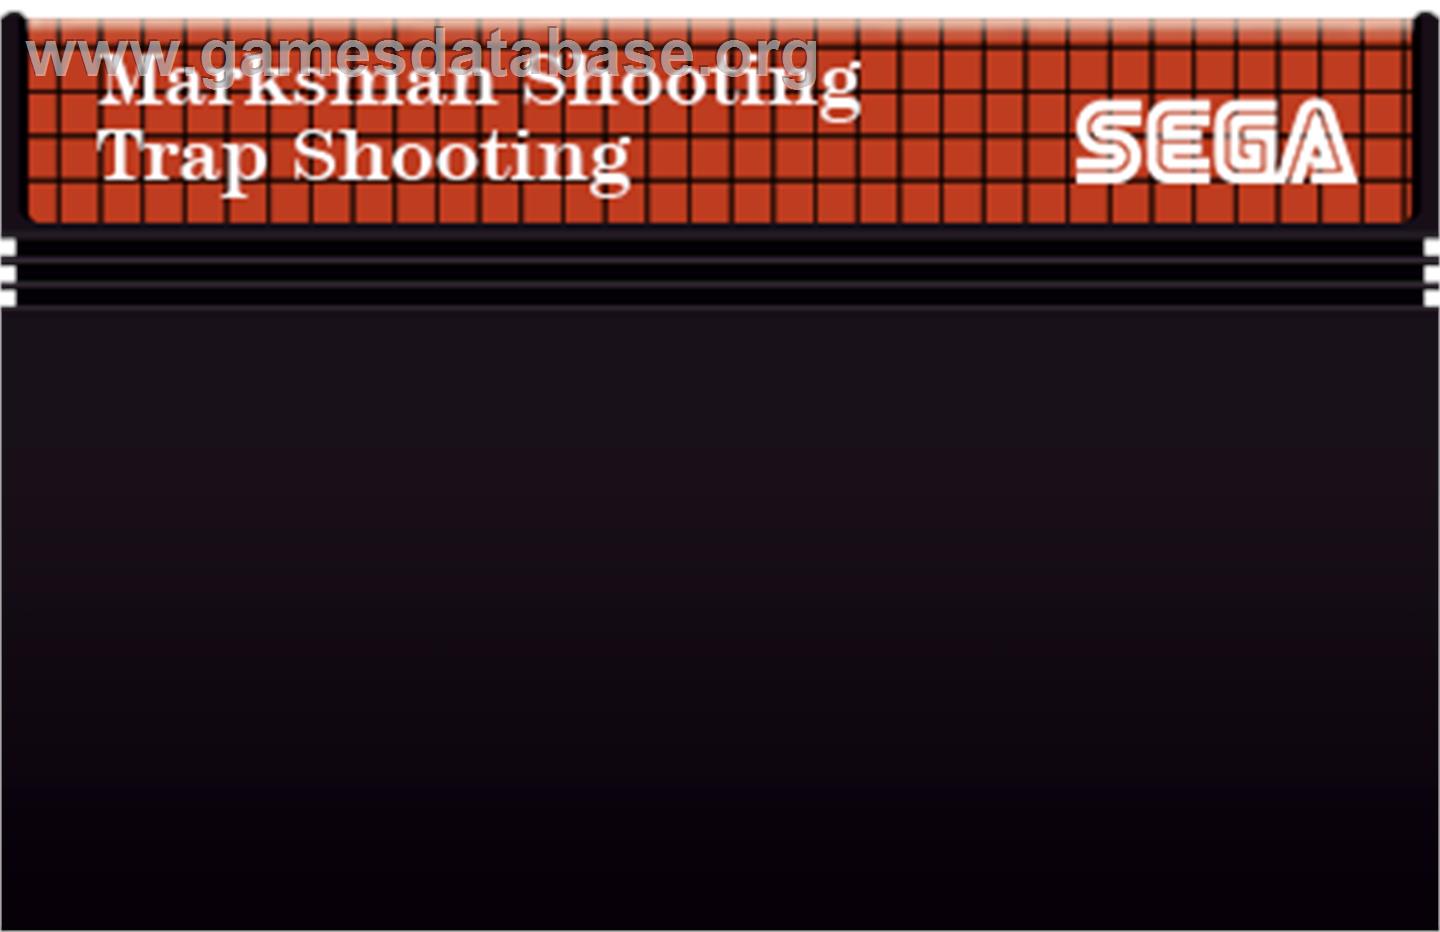 Marksman Shooting & Trap Shooting - Sega Master System - Artwork - Cartridge